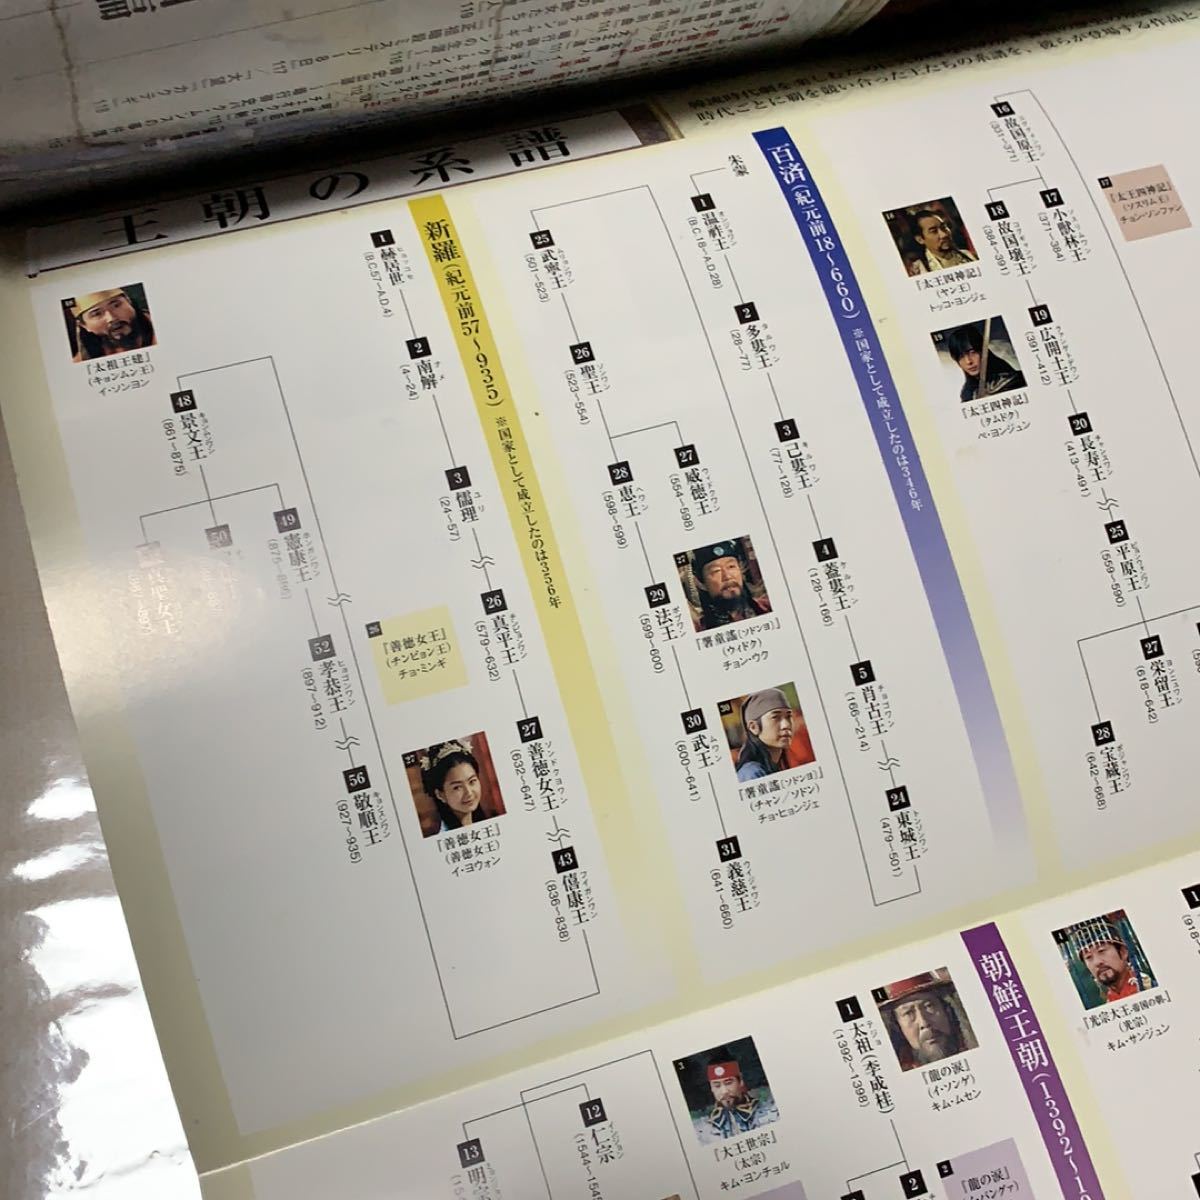 韓国時代劇 パーフェクトガイド0910 特製ポスター付き「韓国の歴史」「王朝の系譜」2009年発行MOOK本